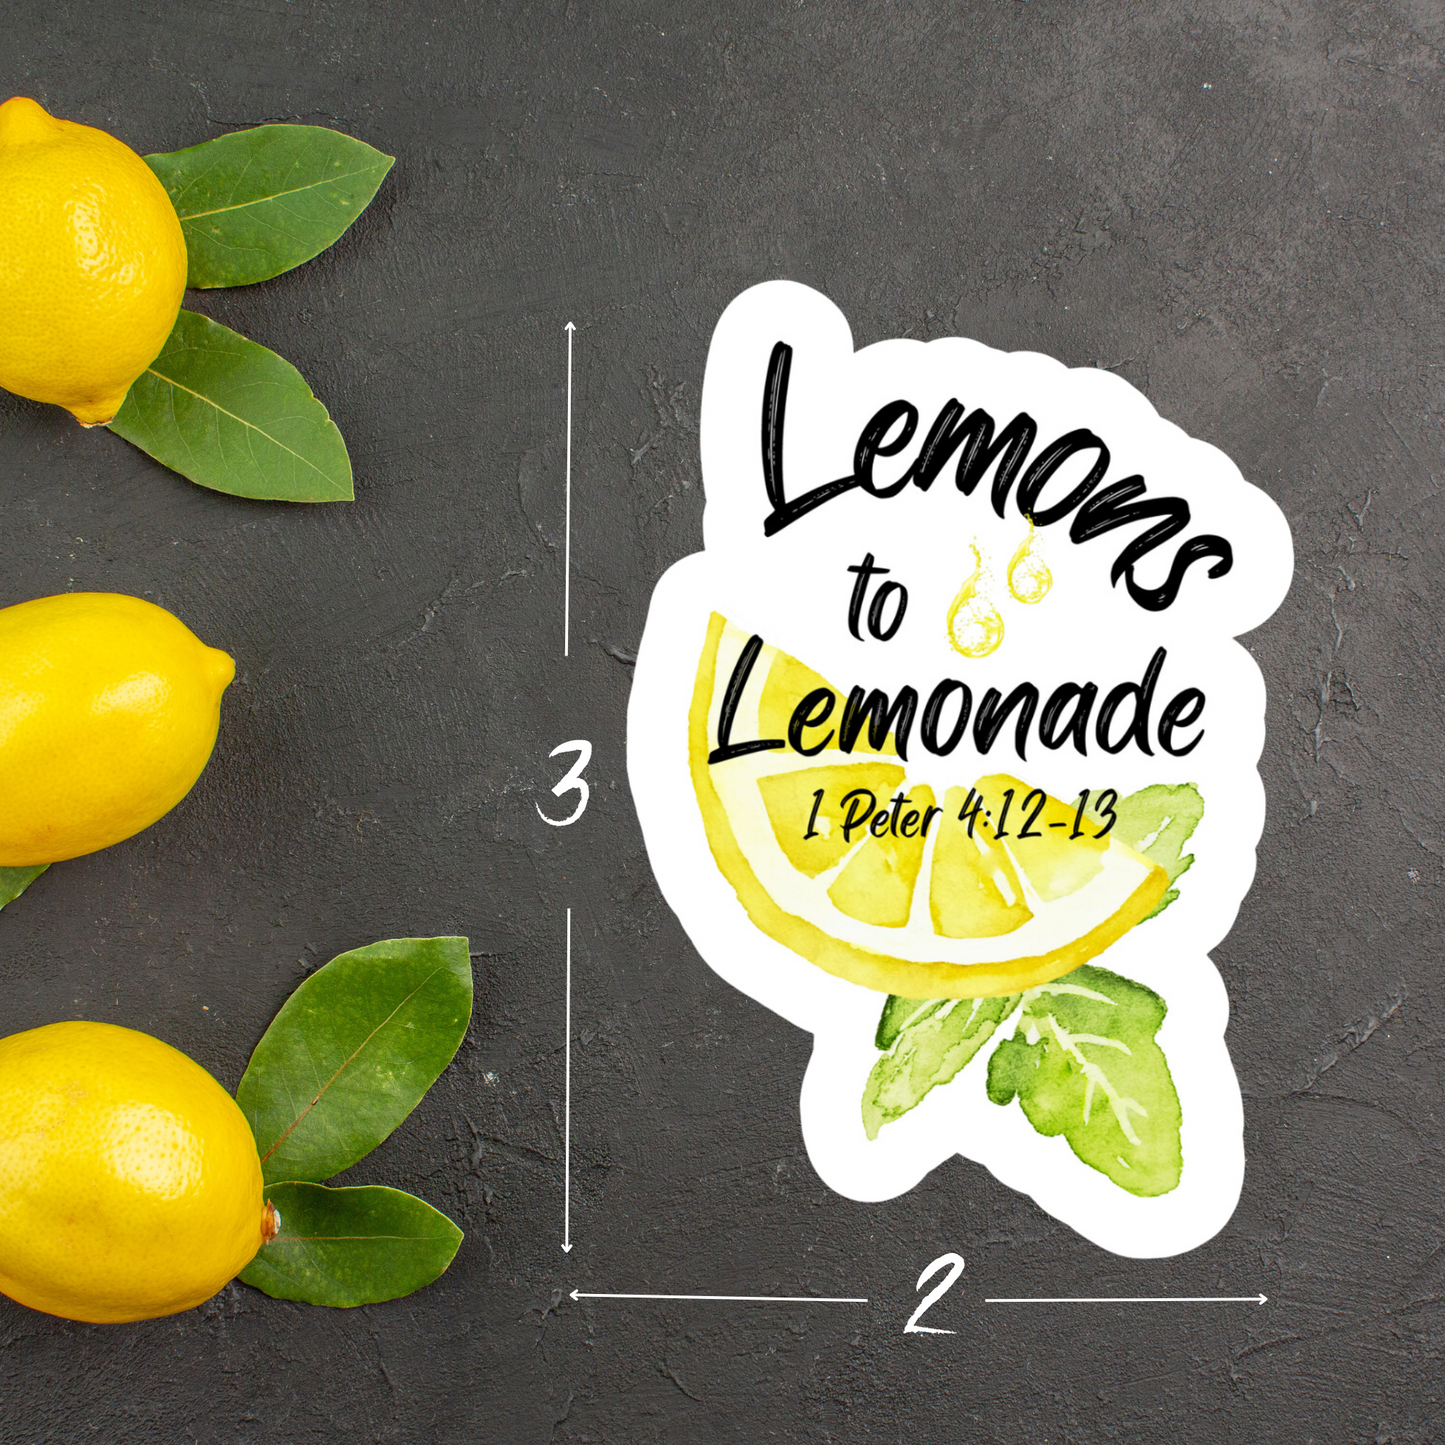 Lemons to Lemonade 1 Peter 4:12-13  Waterproof Sticker